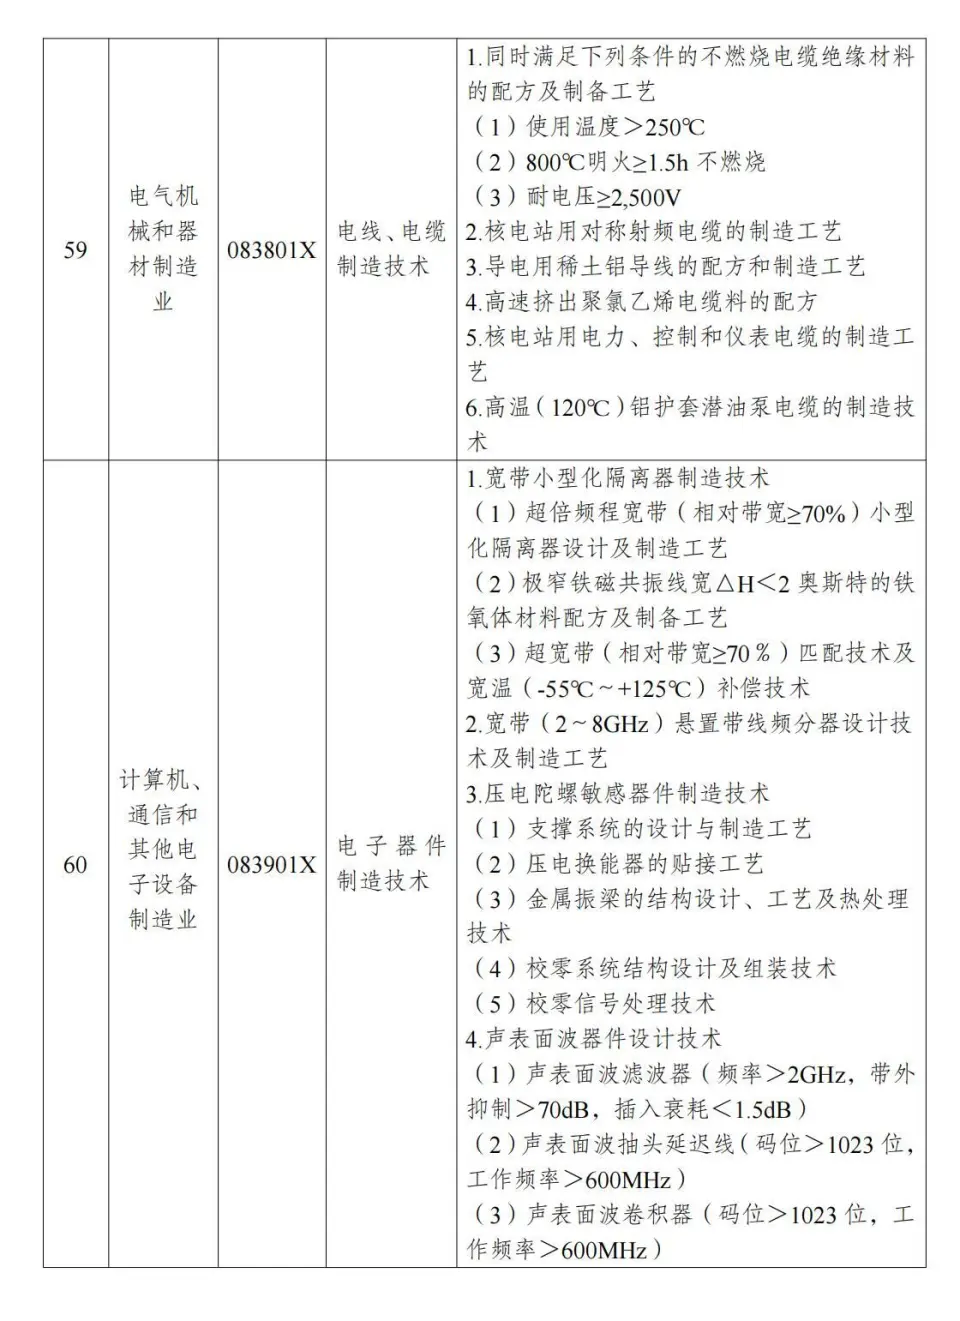 两部分公布《中国制止出口限制出口技术目录》 第16张图片